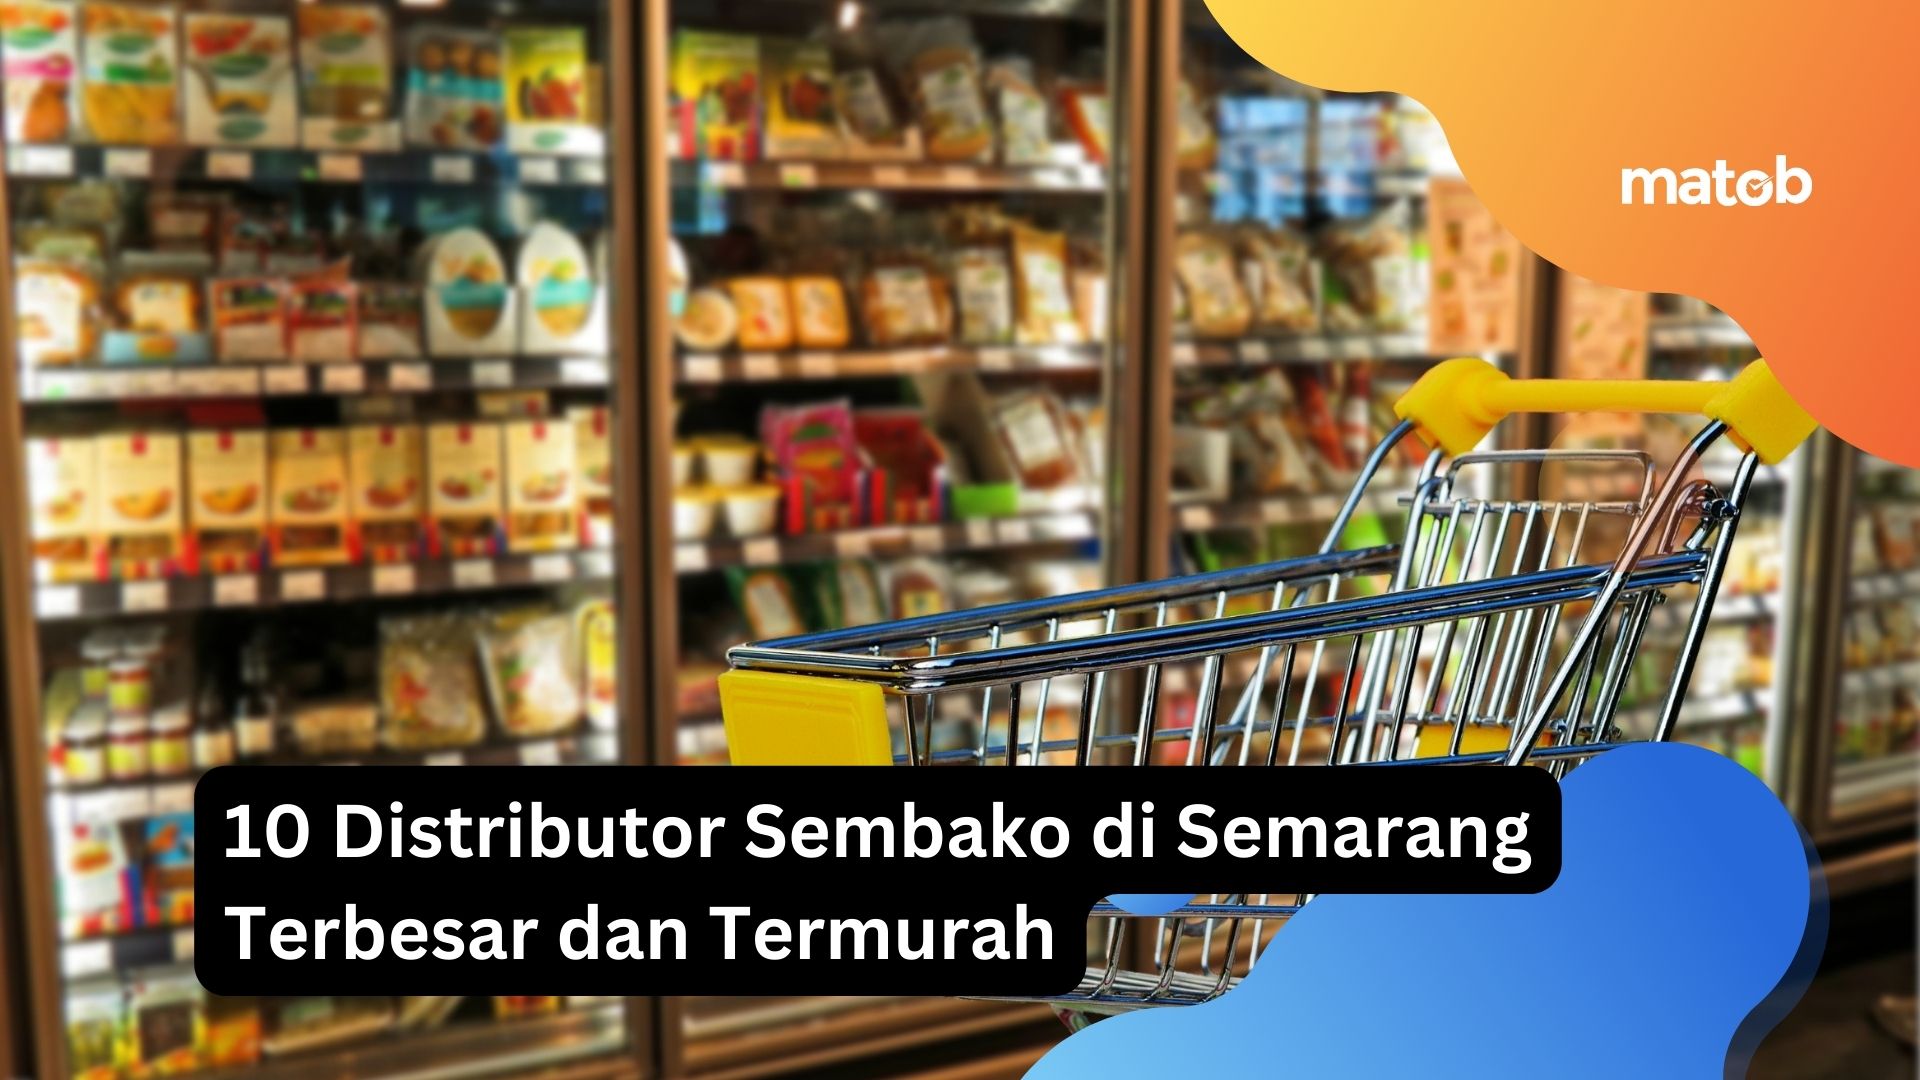 10 Distributor Sembako di Semarang Terbesar dan Termurah